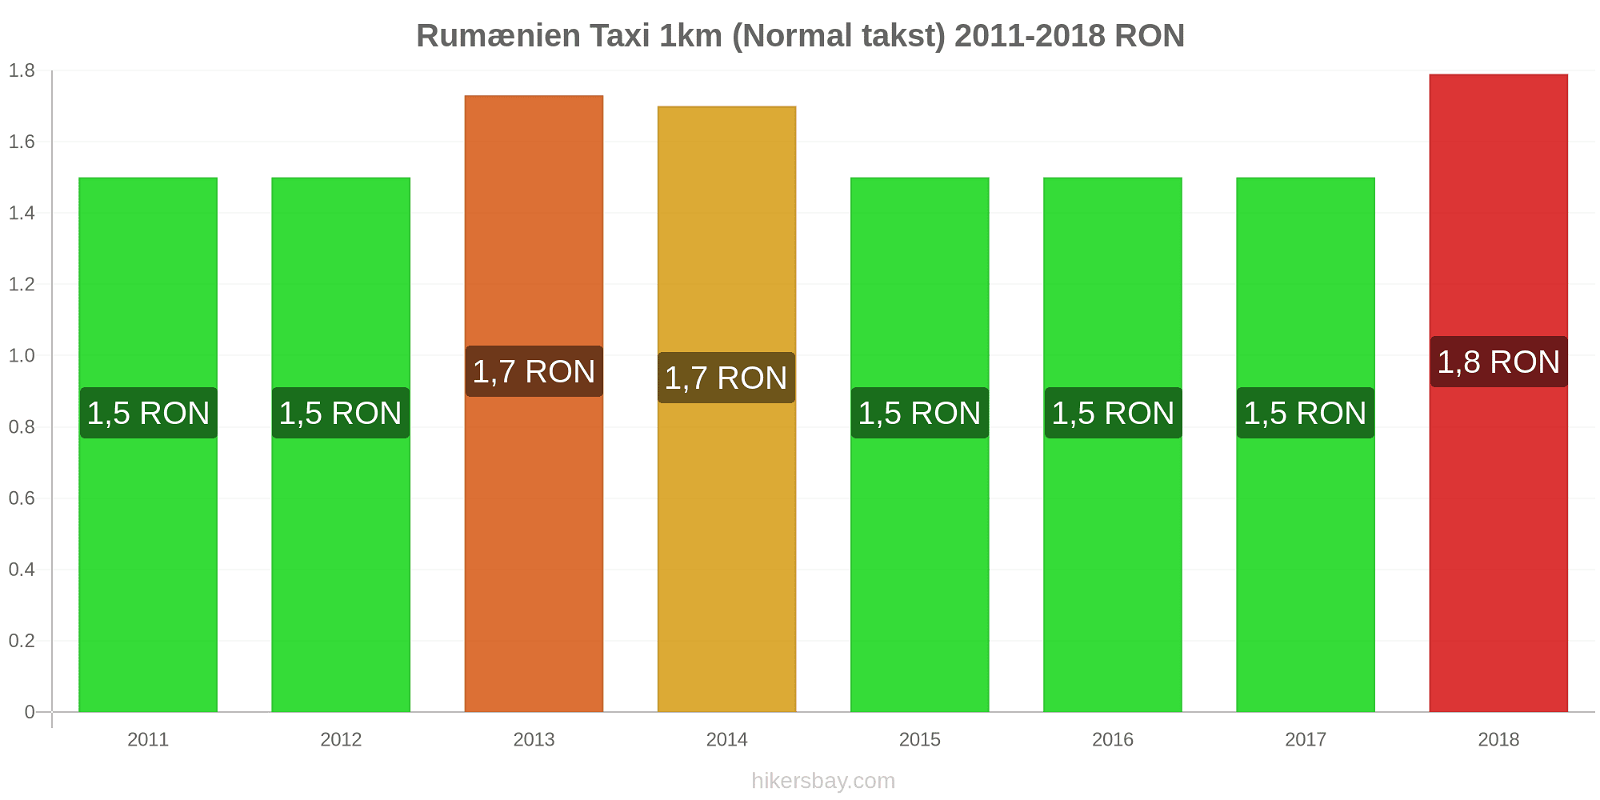 Rumænien prisændringer Taxi 1km (normal takst) hikersbay.com